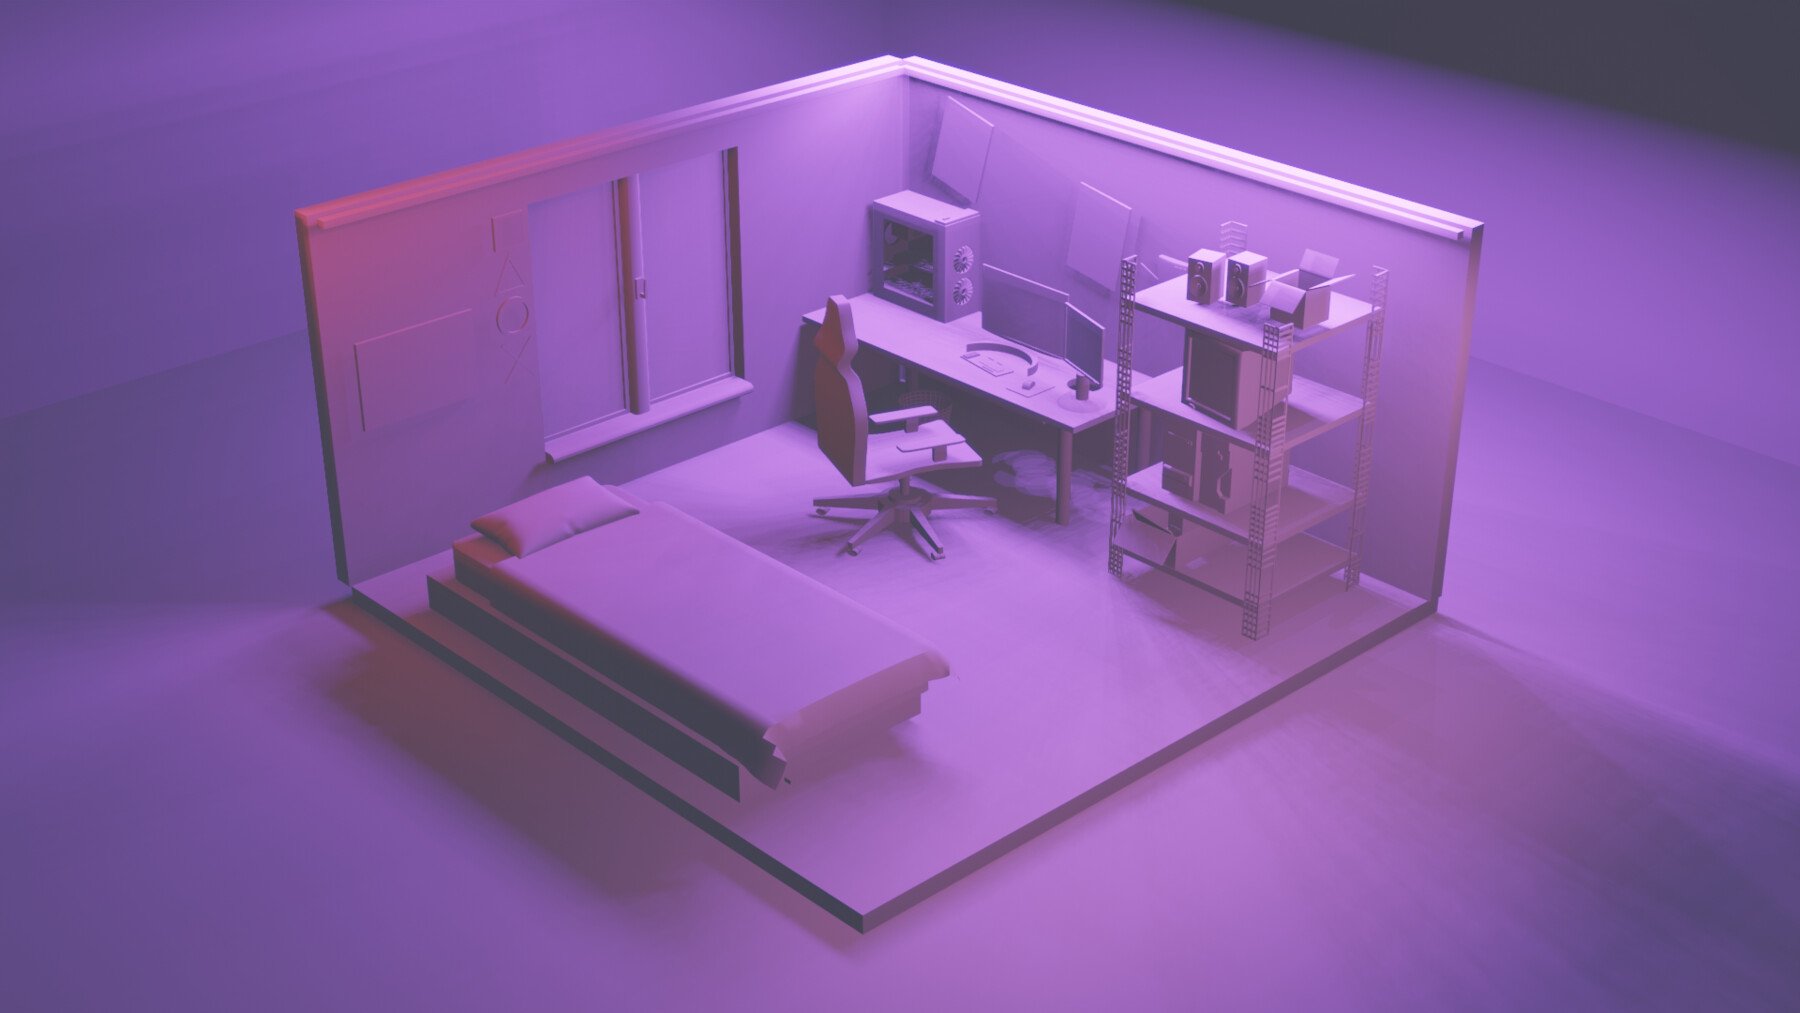 ArtStation - 3D Isometric Game Room Design